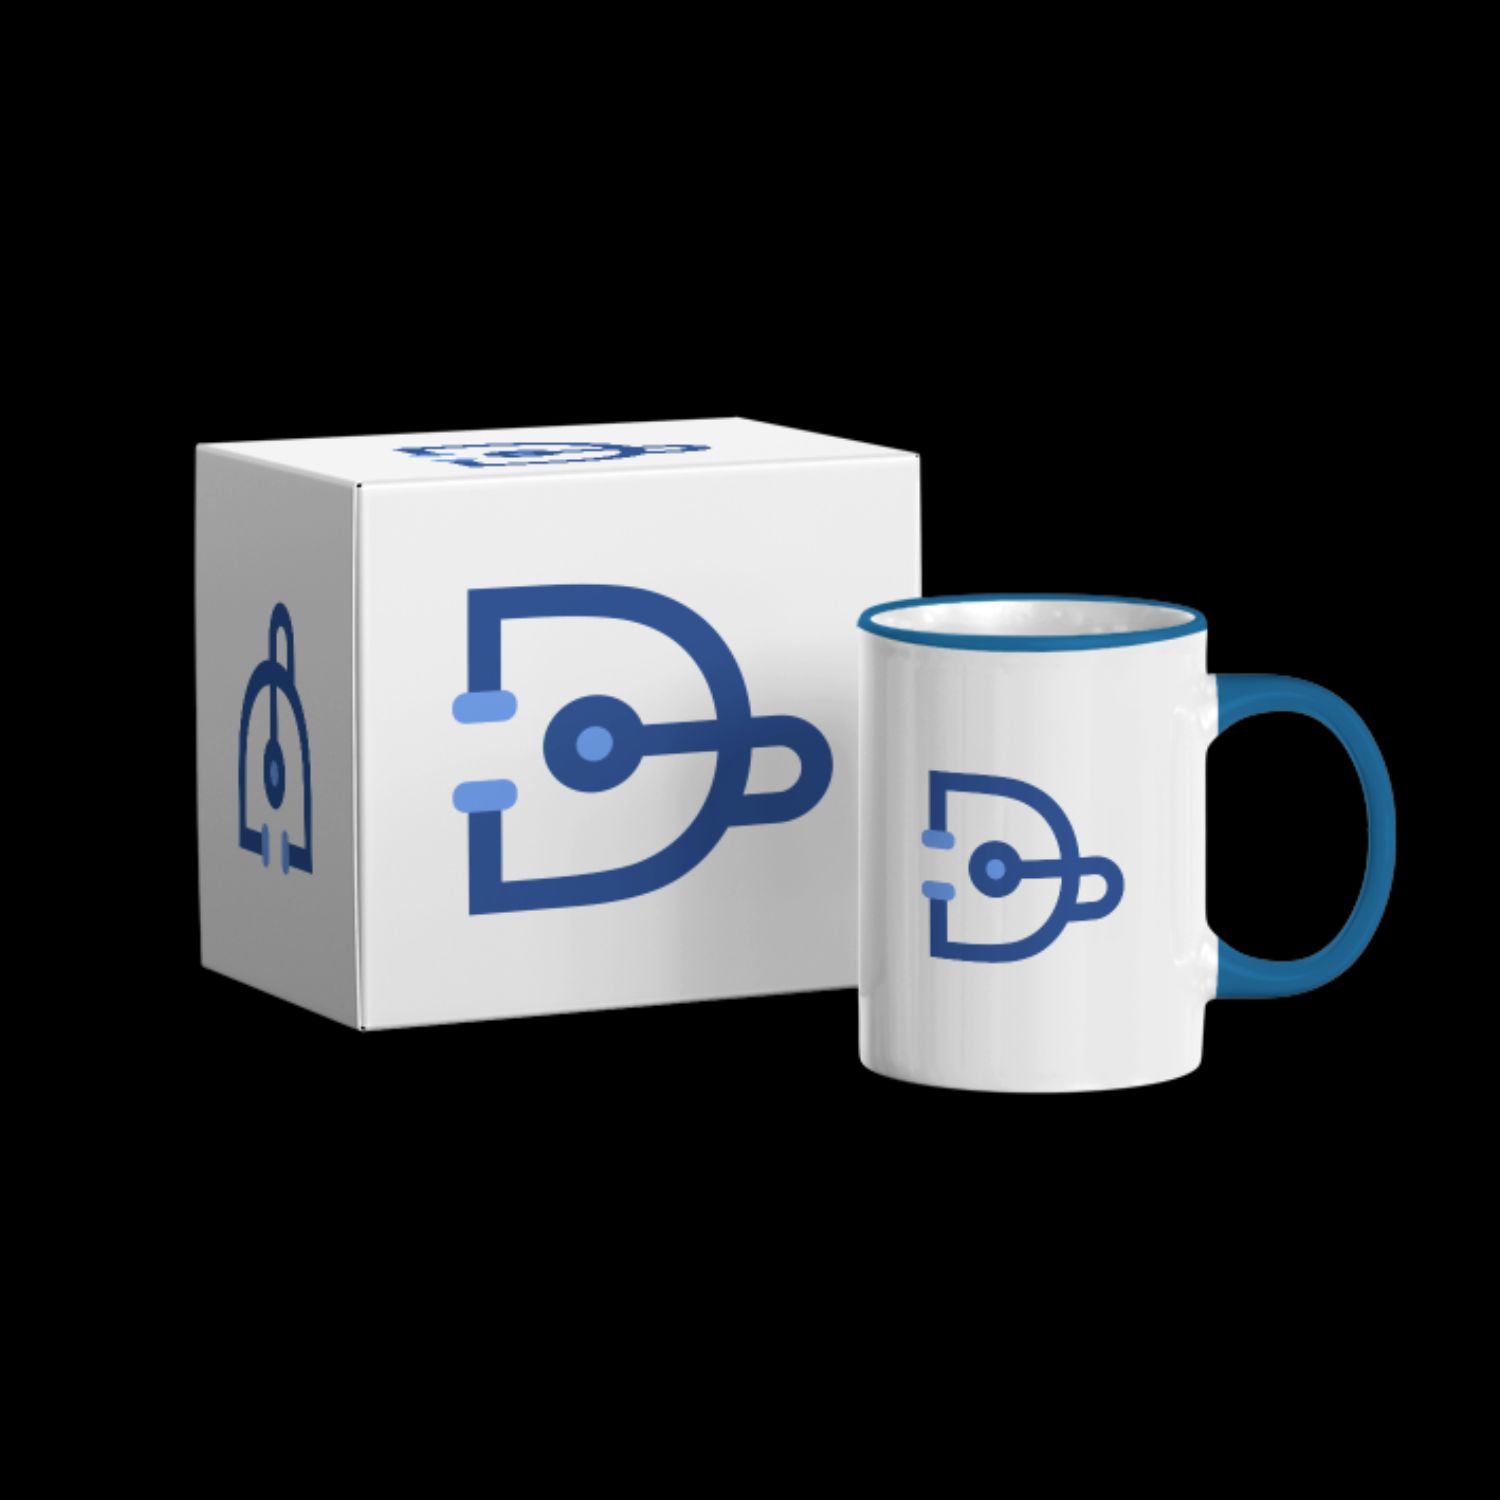 D For Doctor Logo